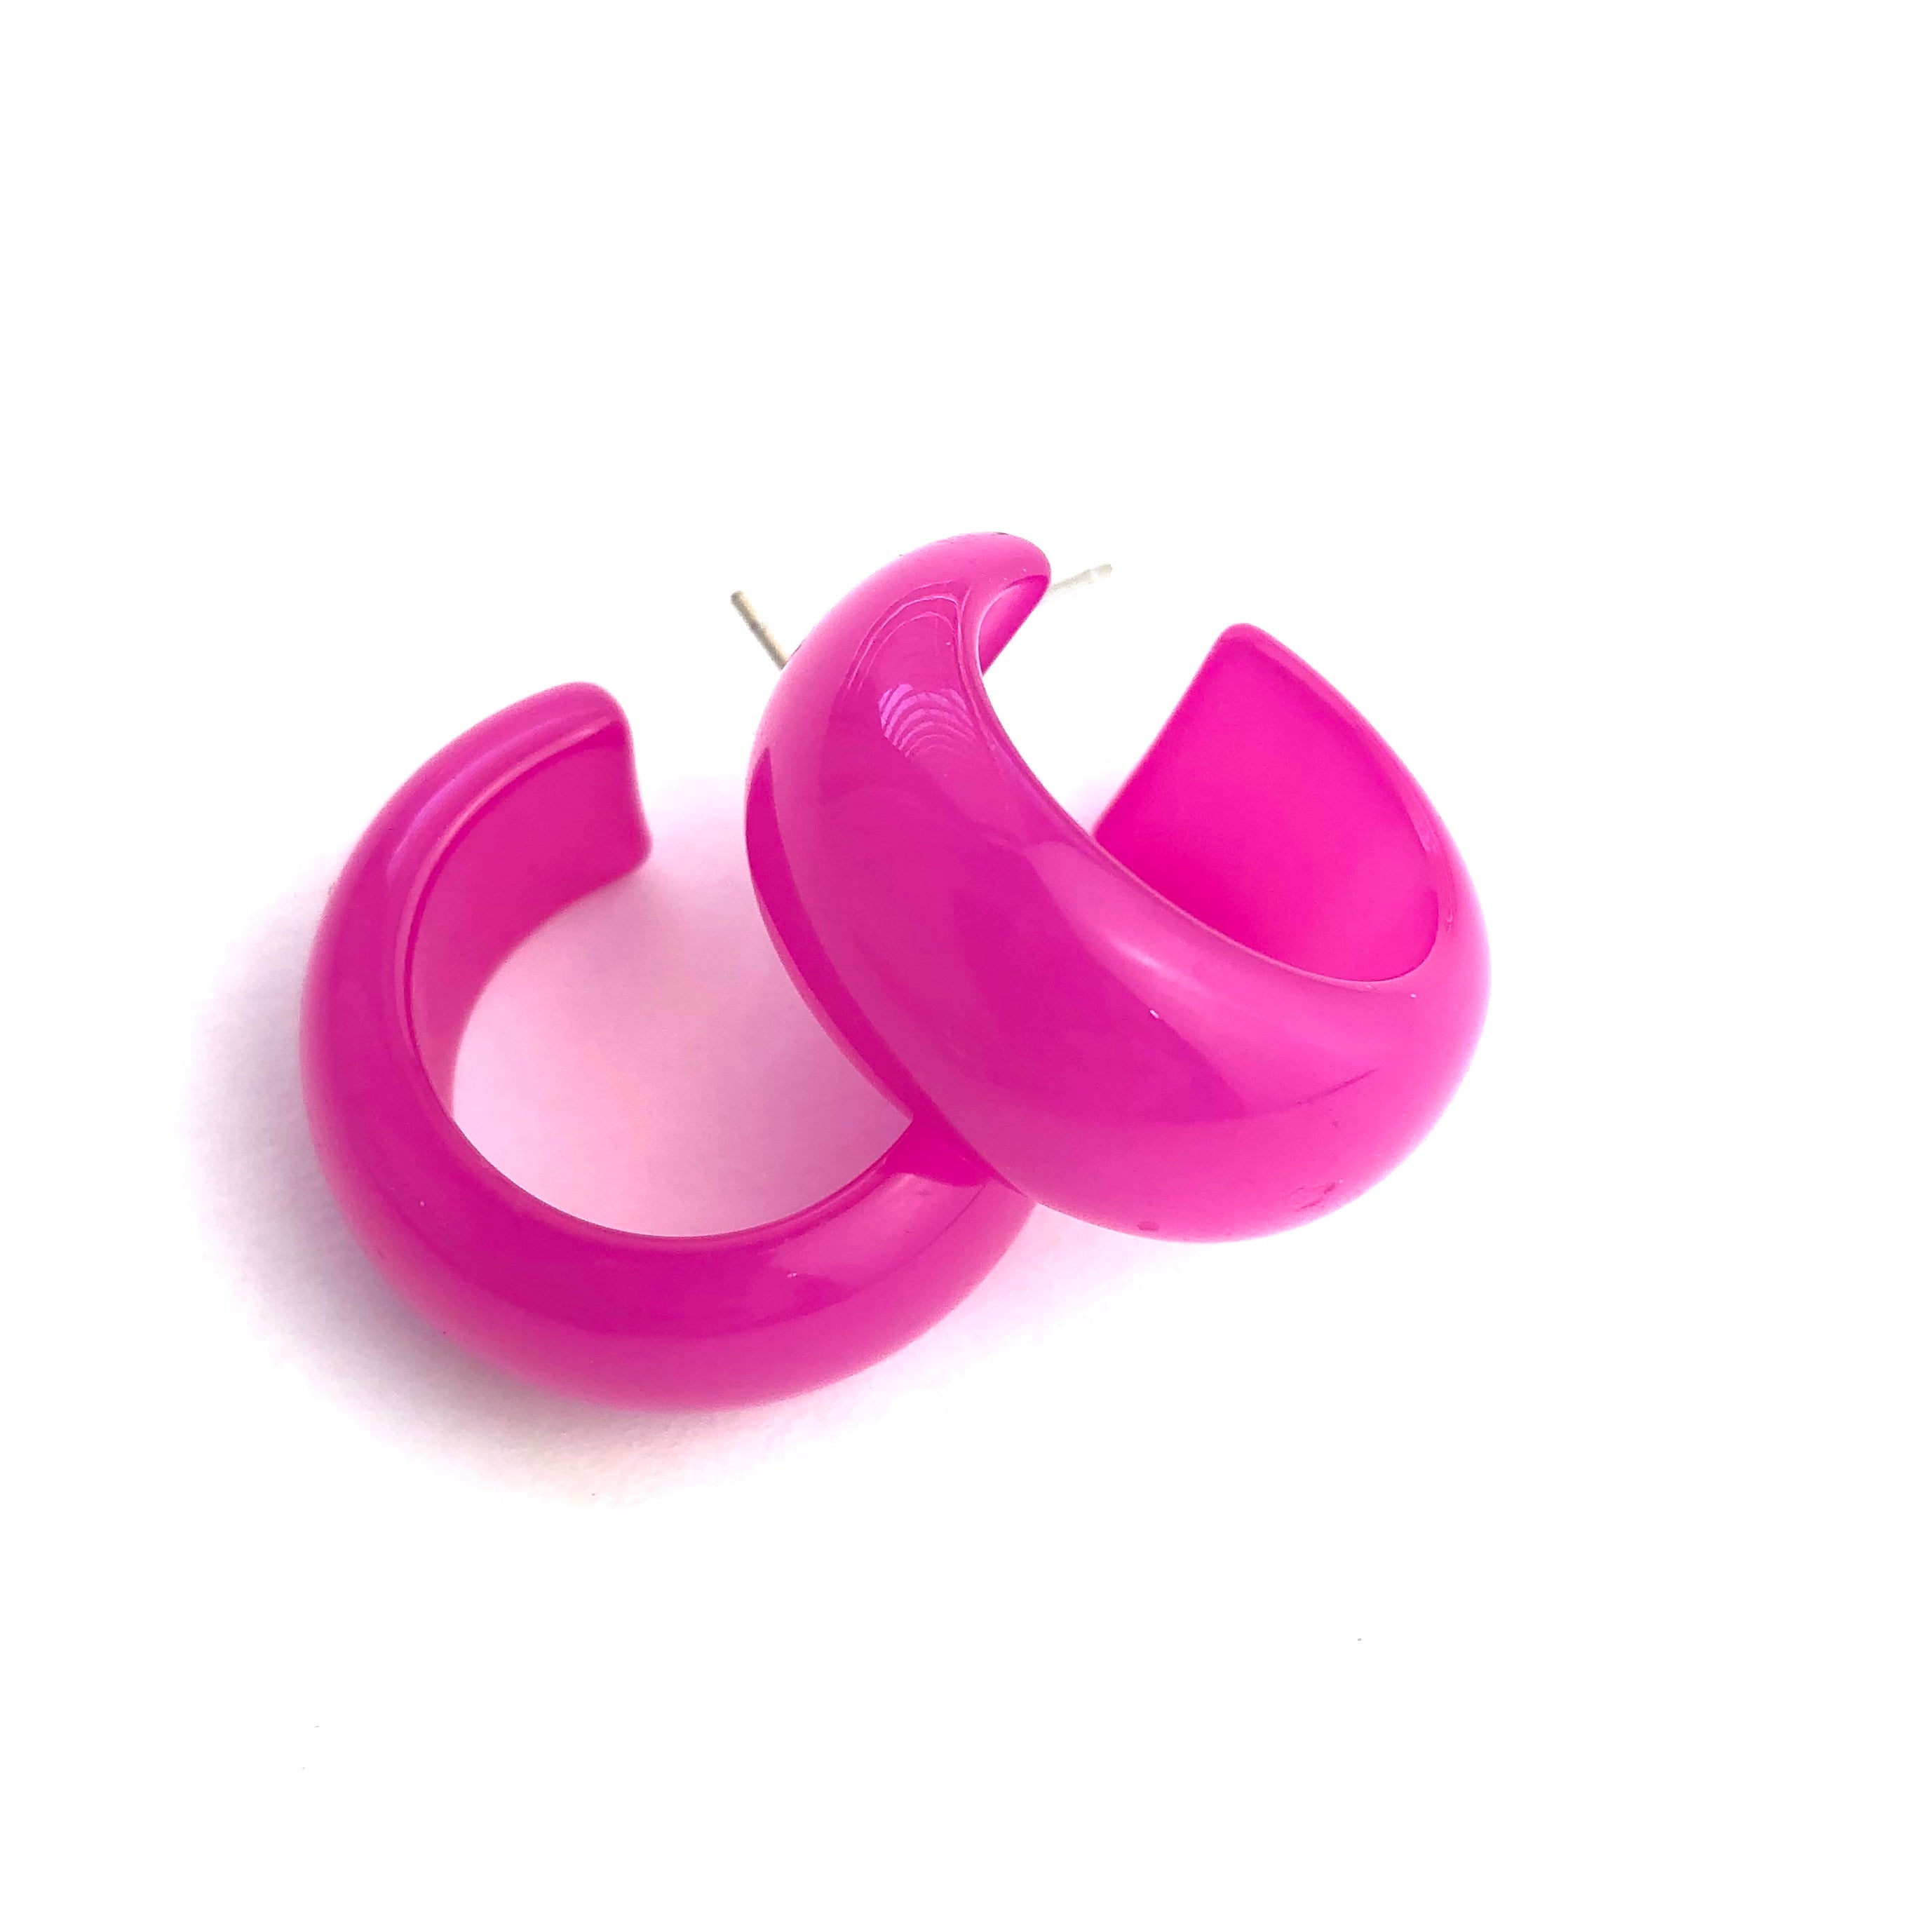 Hot Pink Moonglow Haskell Hoop Earrings